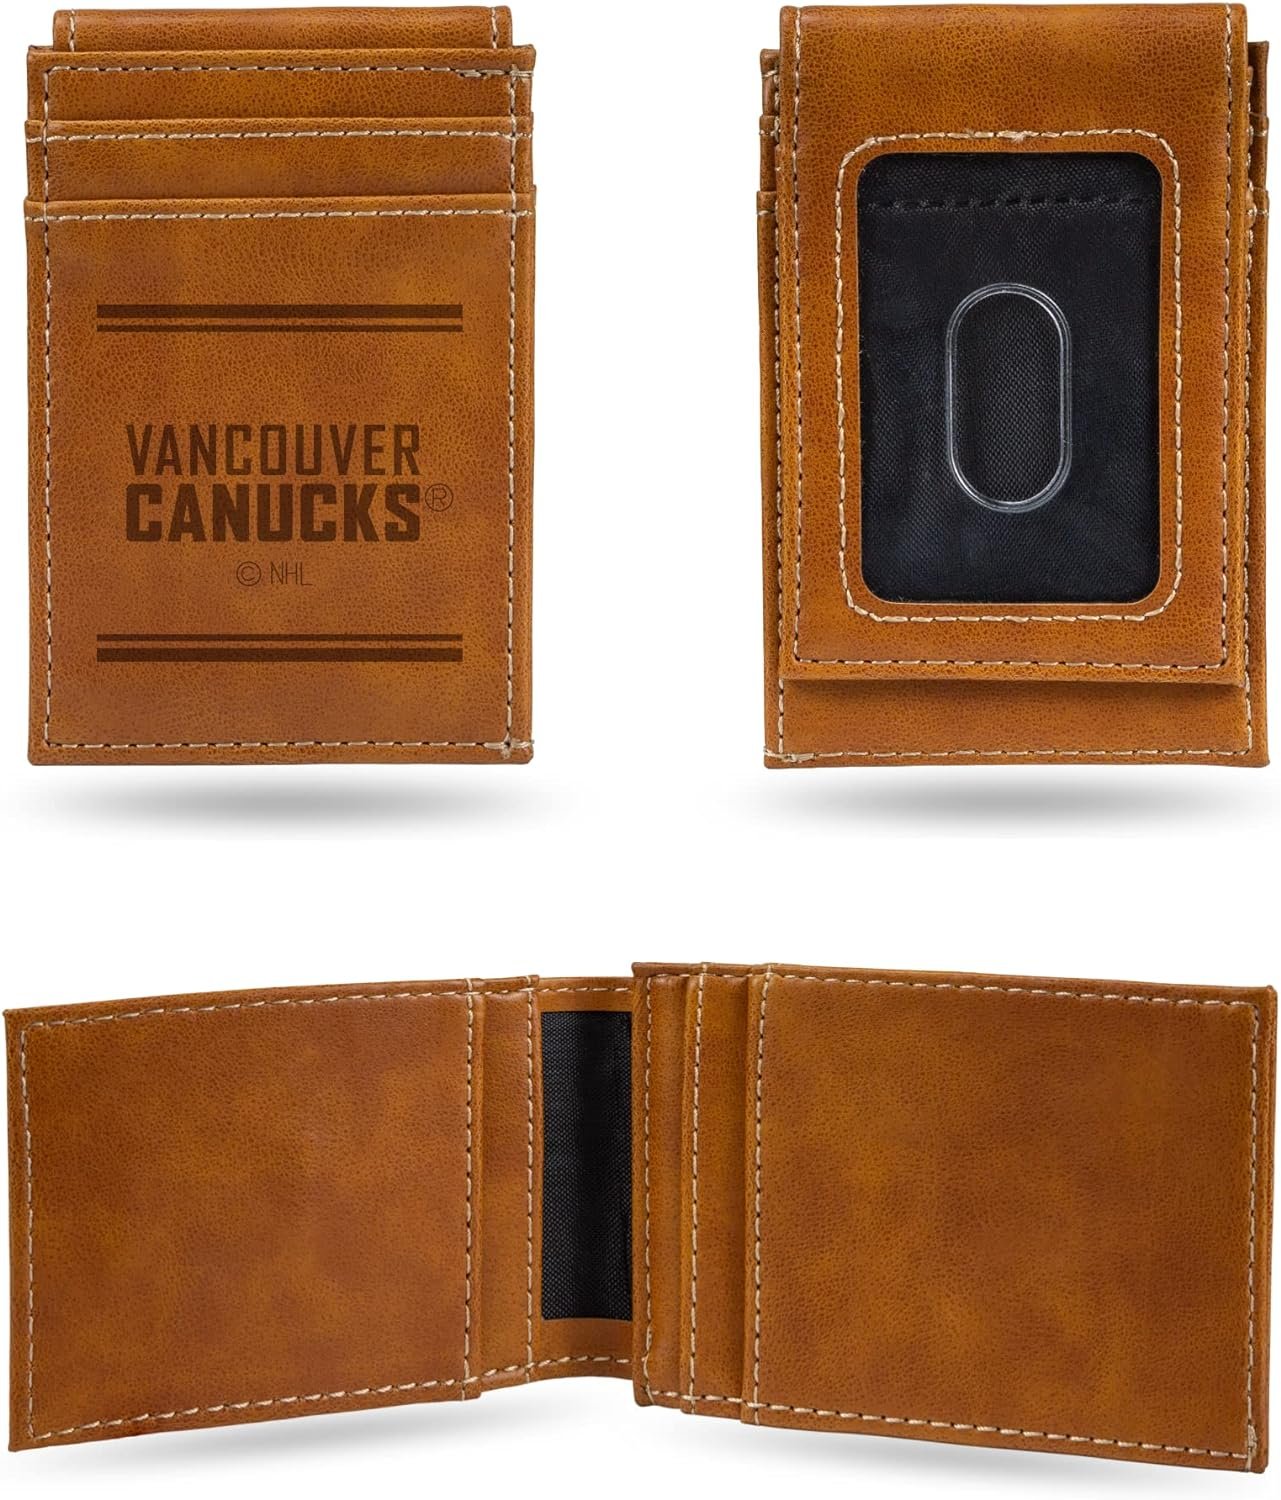 Vancouver Canucks Premium Brown Leather Wallet, Front Pocket Magnetic Money Clip, Laser Engraved, Vegan